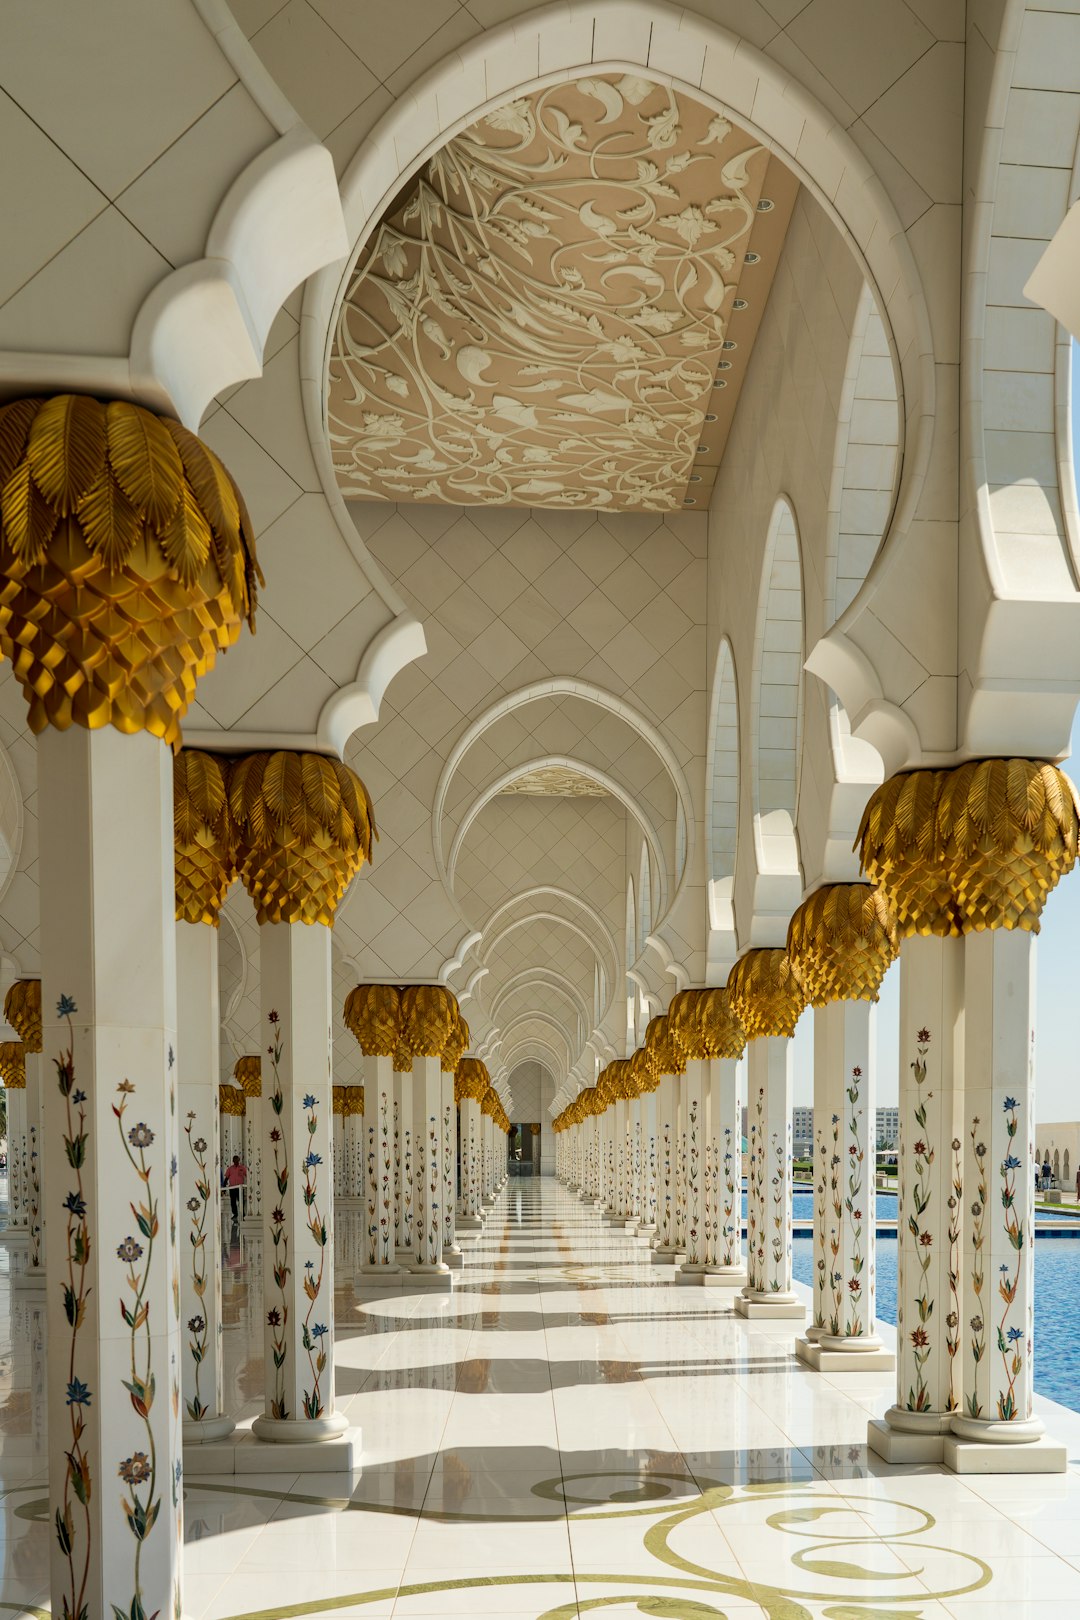 Place of worship photo spot Sheikh Zayed Mosque Abu Dhabi - United Arab Emirates